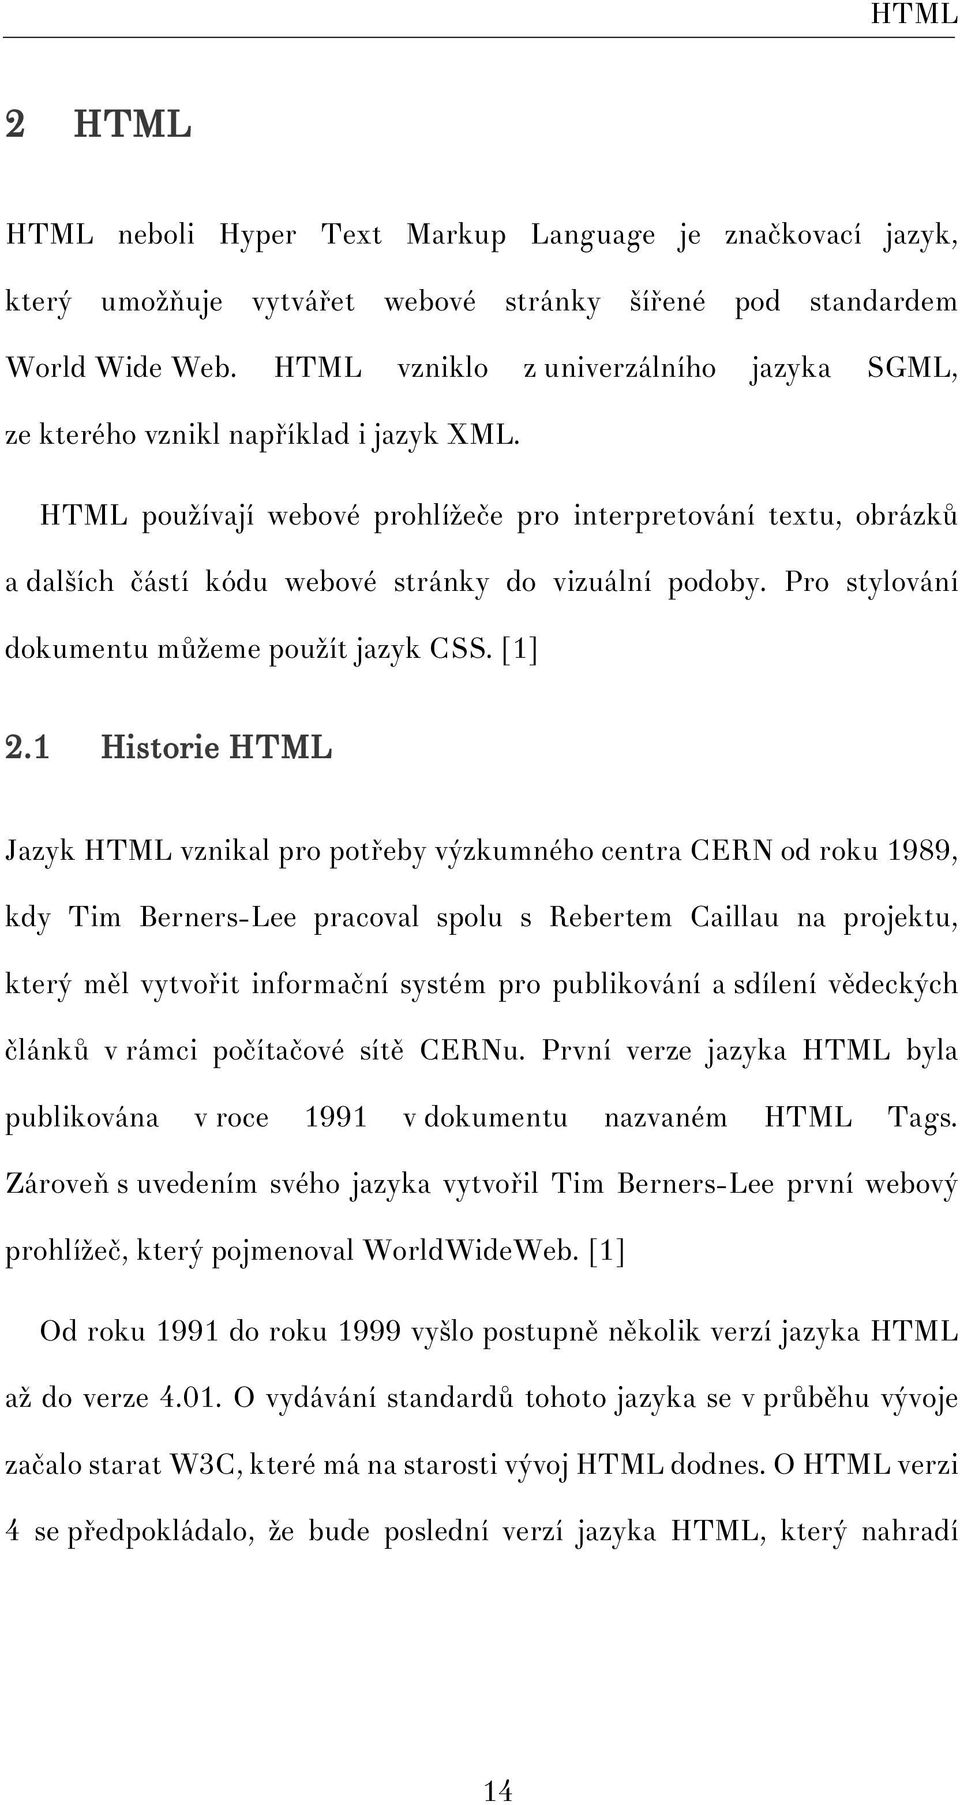 HTML používají webové prohlížeče pro interpretování textu, obrázků a dalších částí kódu webové stránky do vizuální podoby. Pro stylování dokumentu můžeme použít jazyk CSS. [1] 2.